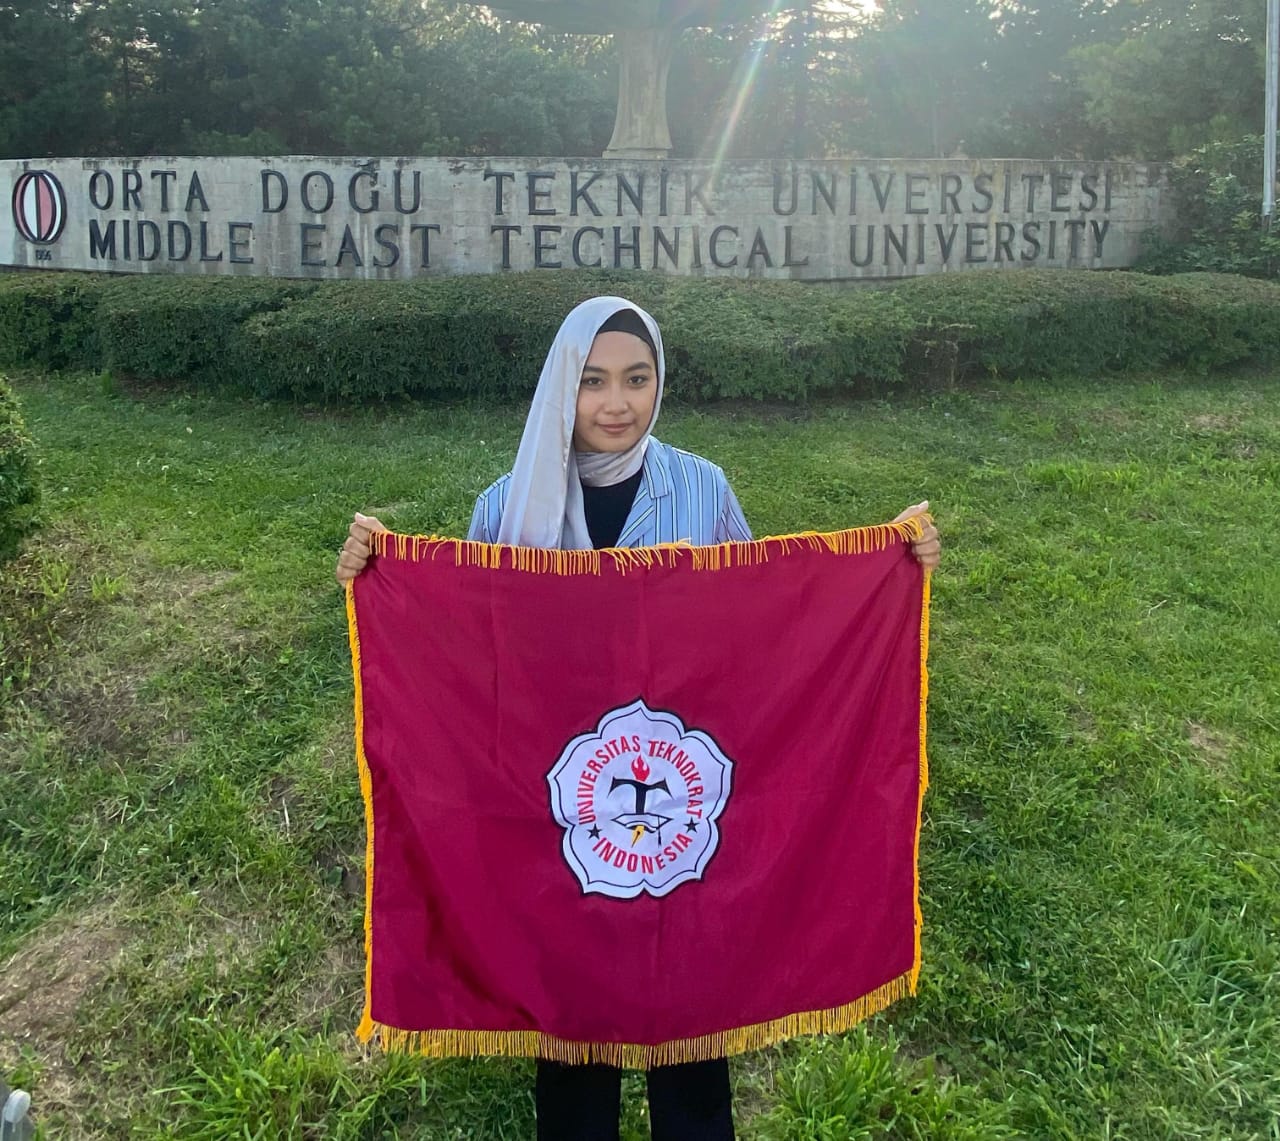 Mahasiswa UTI Shavina Lestari Jalani Program Pertukaran Pelajar di Turki